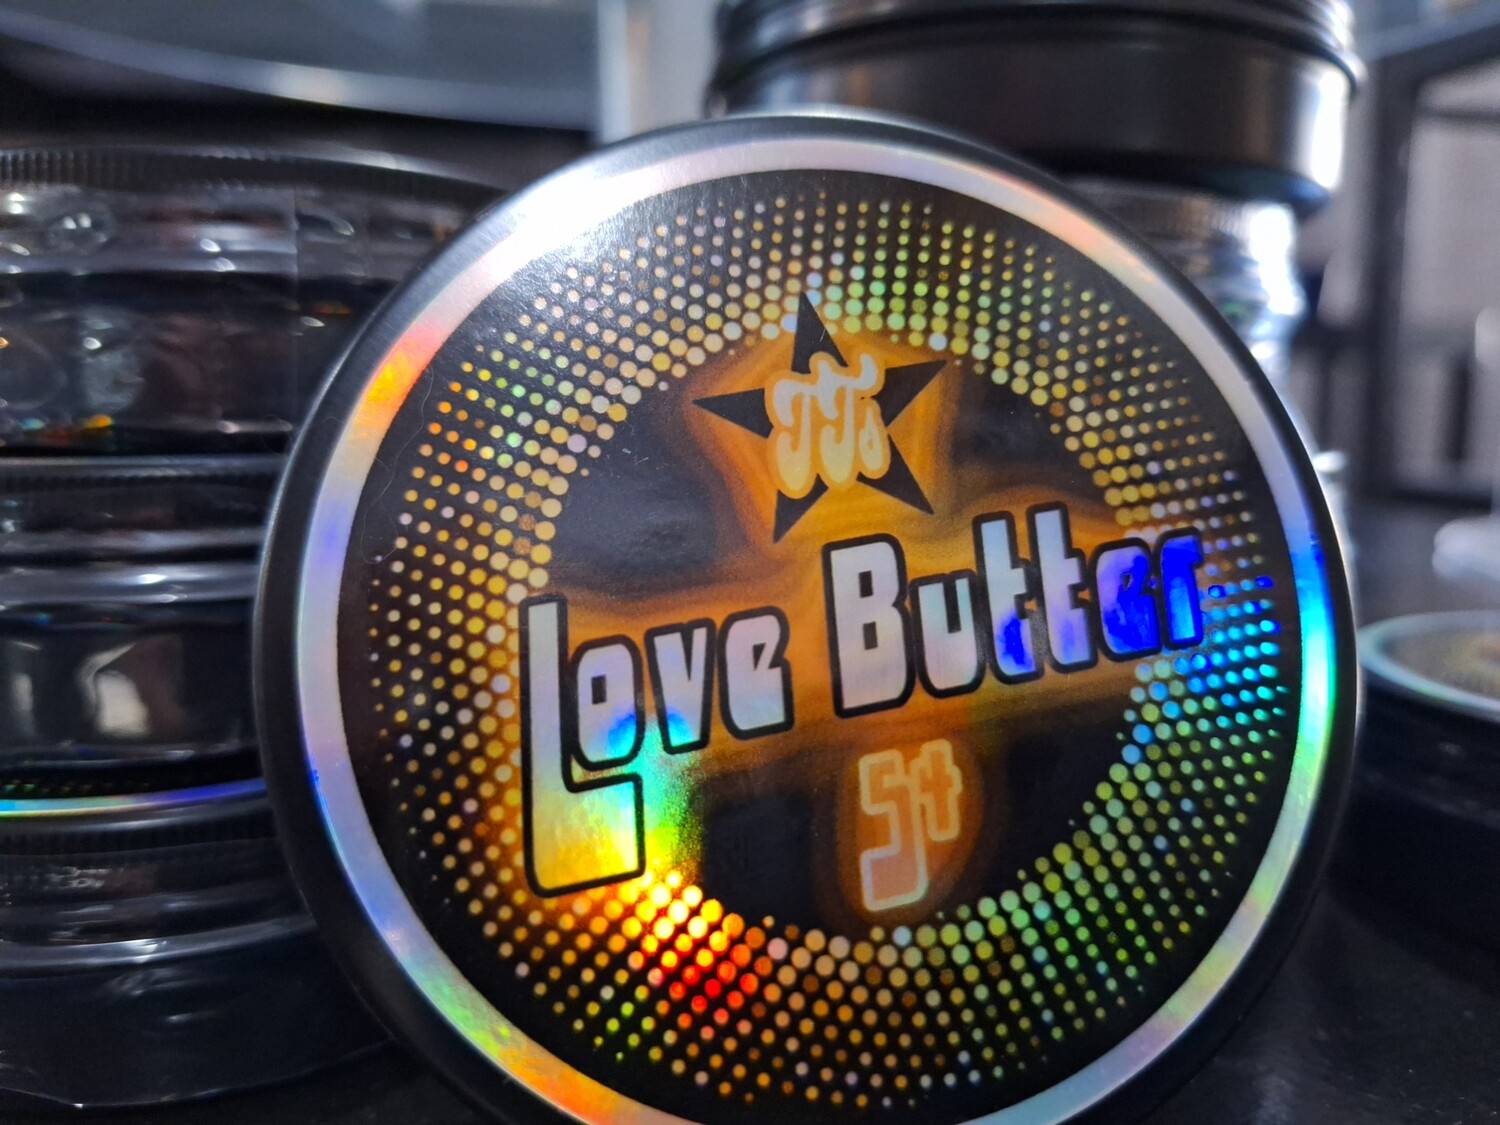 Love Butter